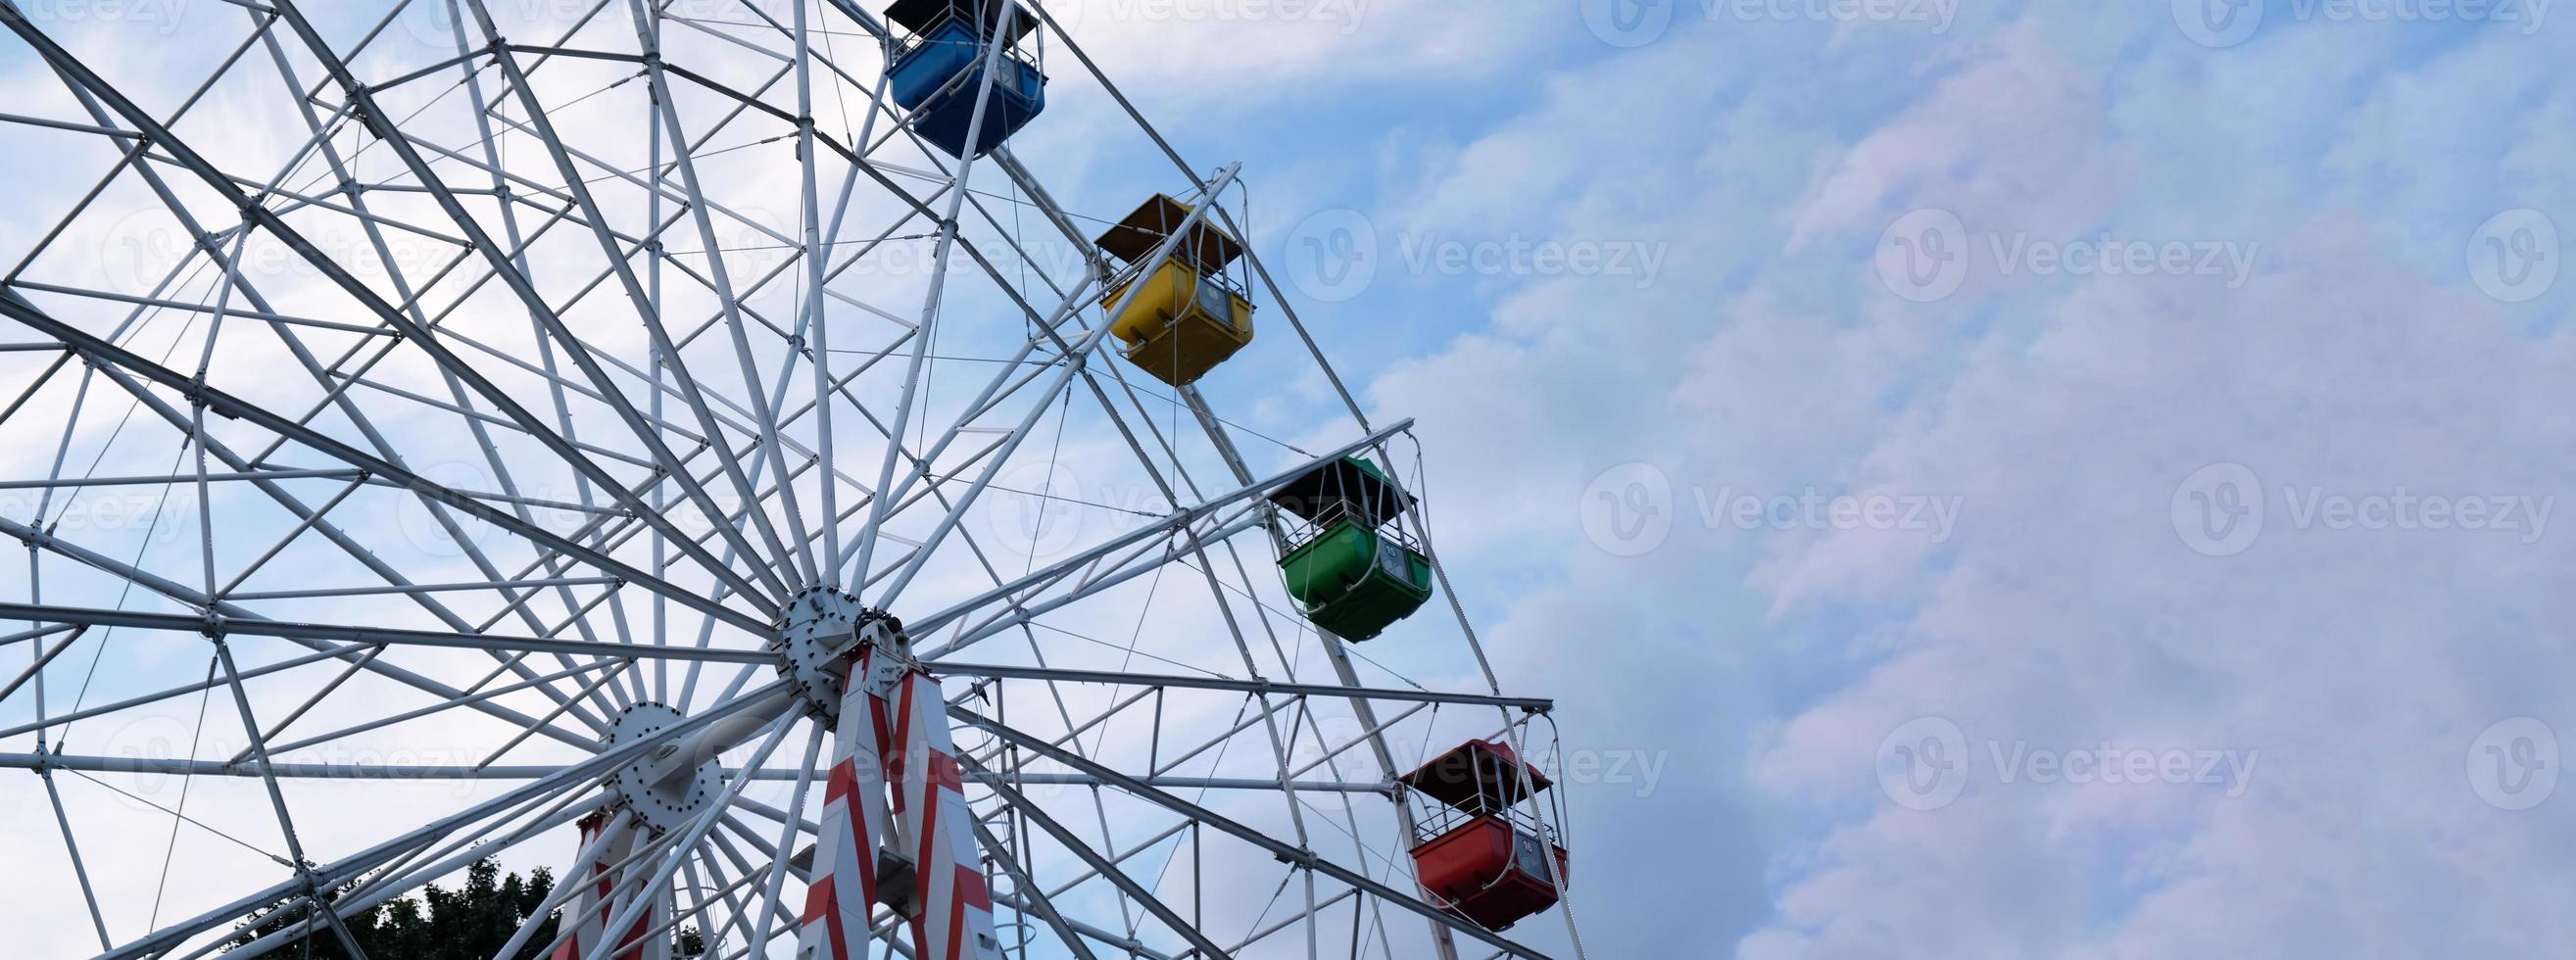 Bunte Riesenräder im Vergnügungspark auf blauem Himmel mit Wolken. getöntes Bild. Untersicht foto